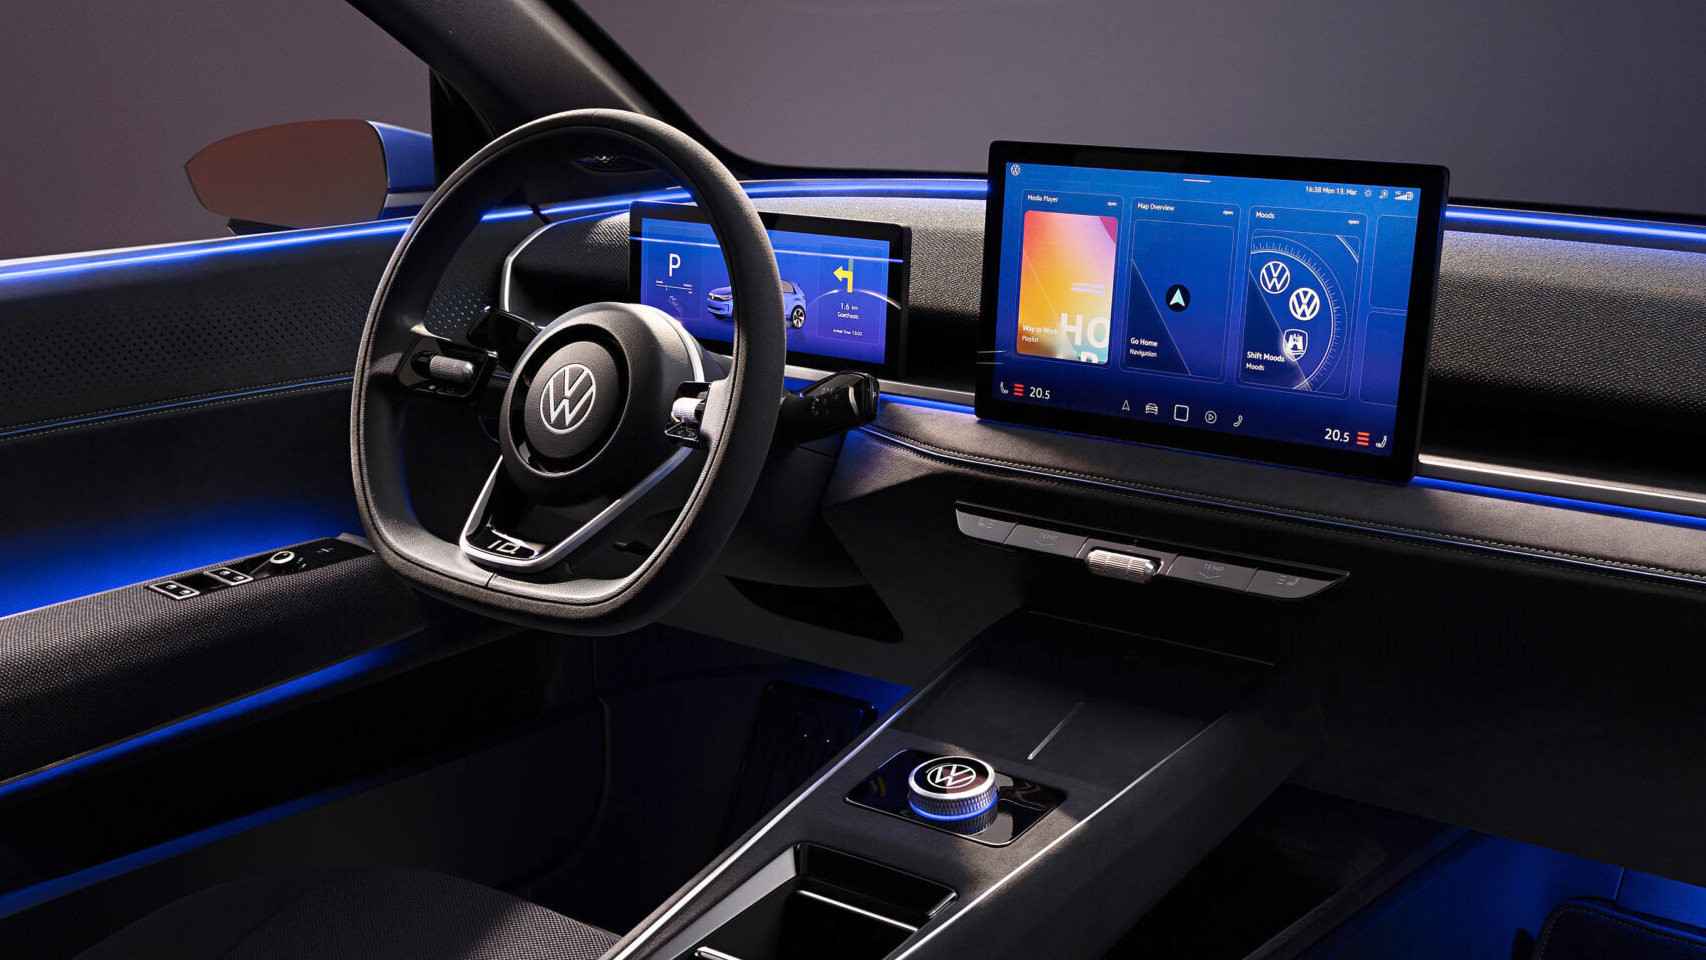 VW usará Android Automotive en sus coches, y eso incluye las futuras actualizaciones